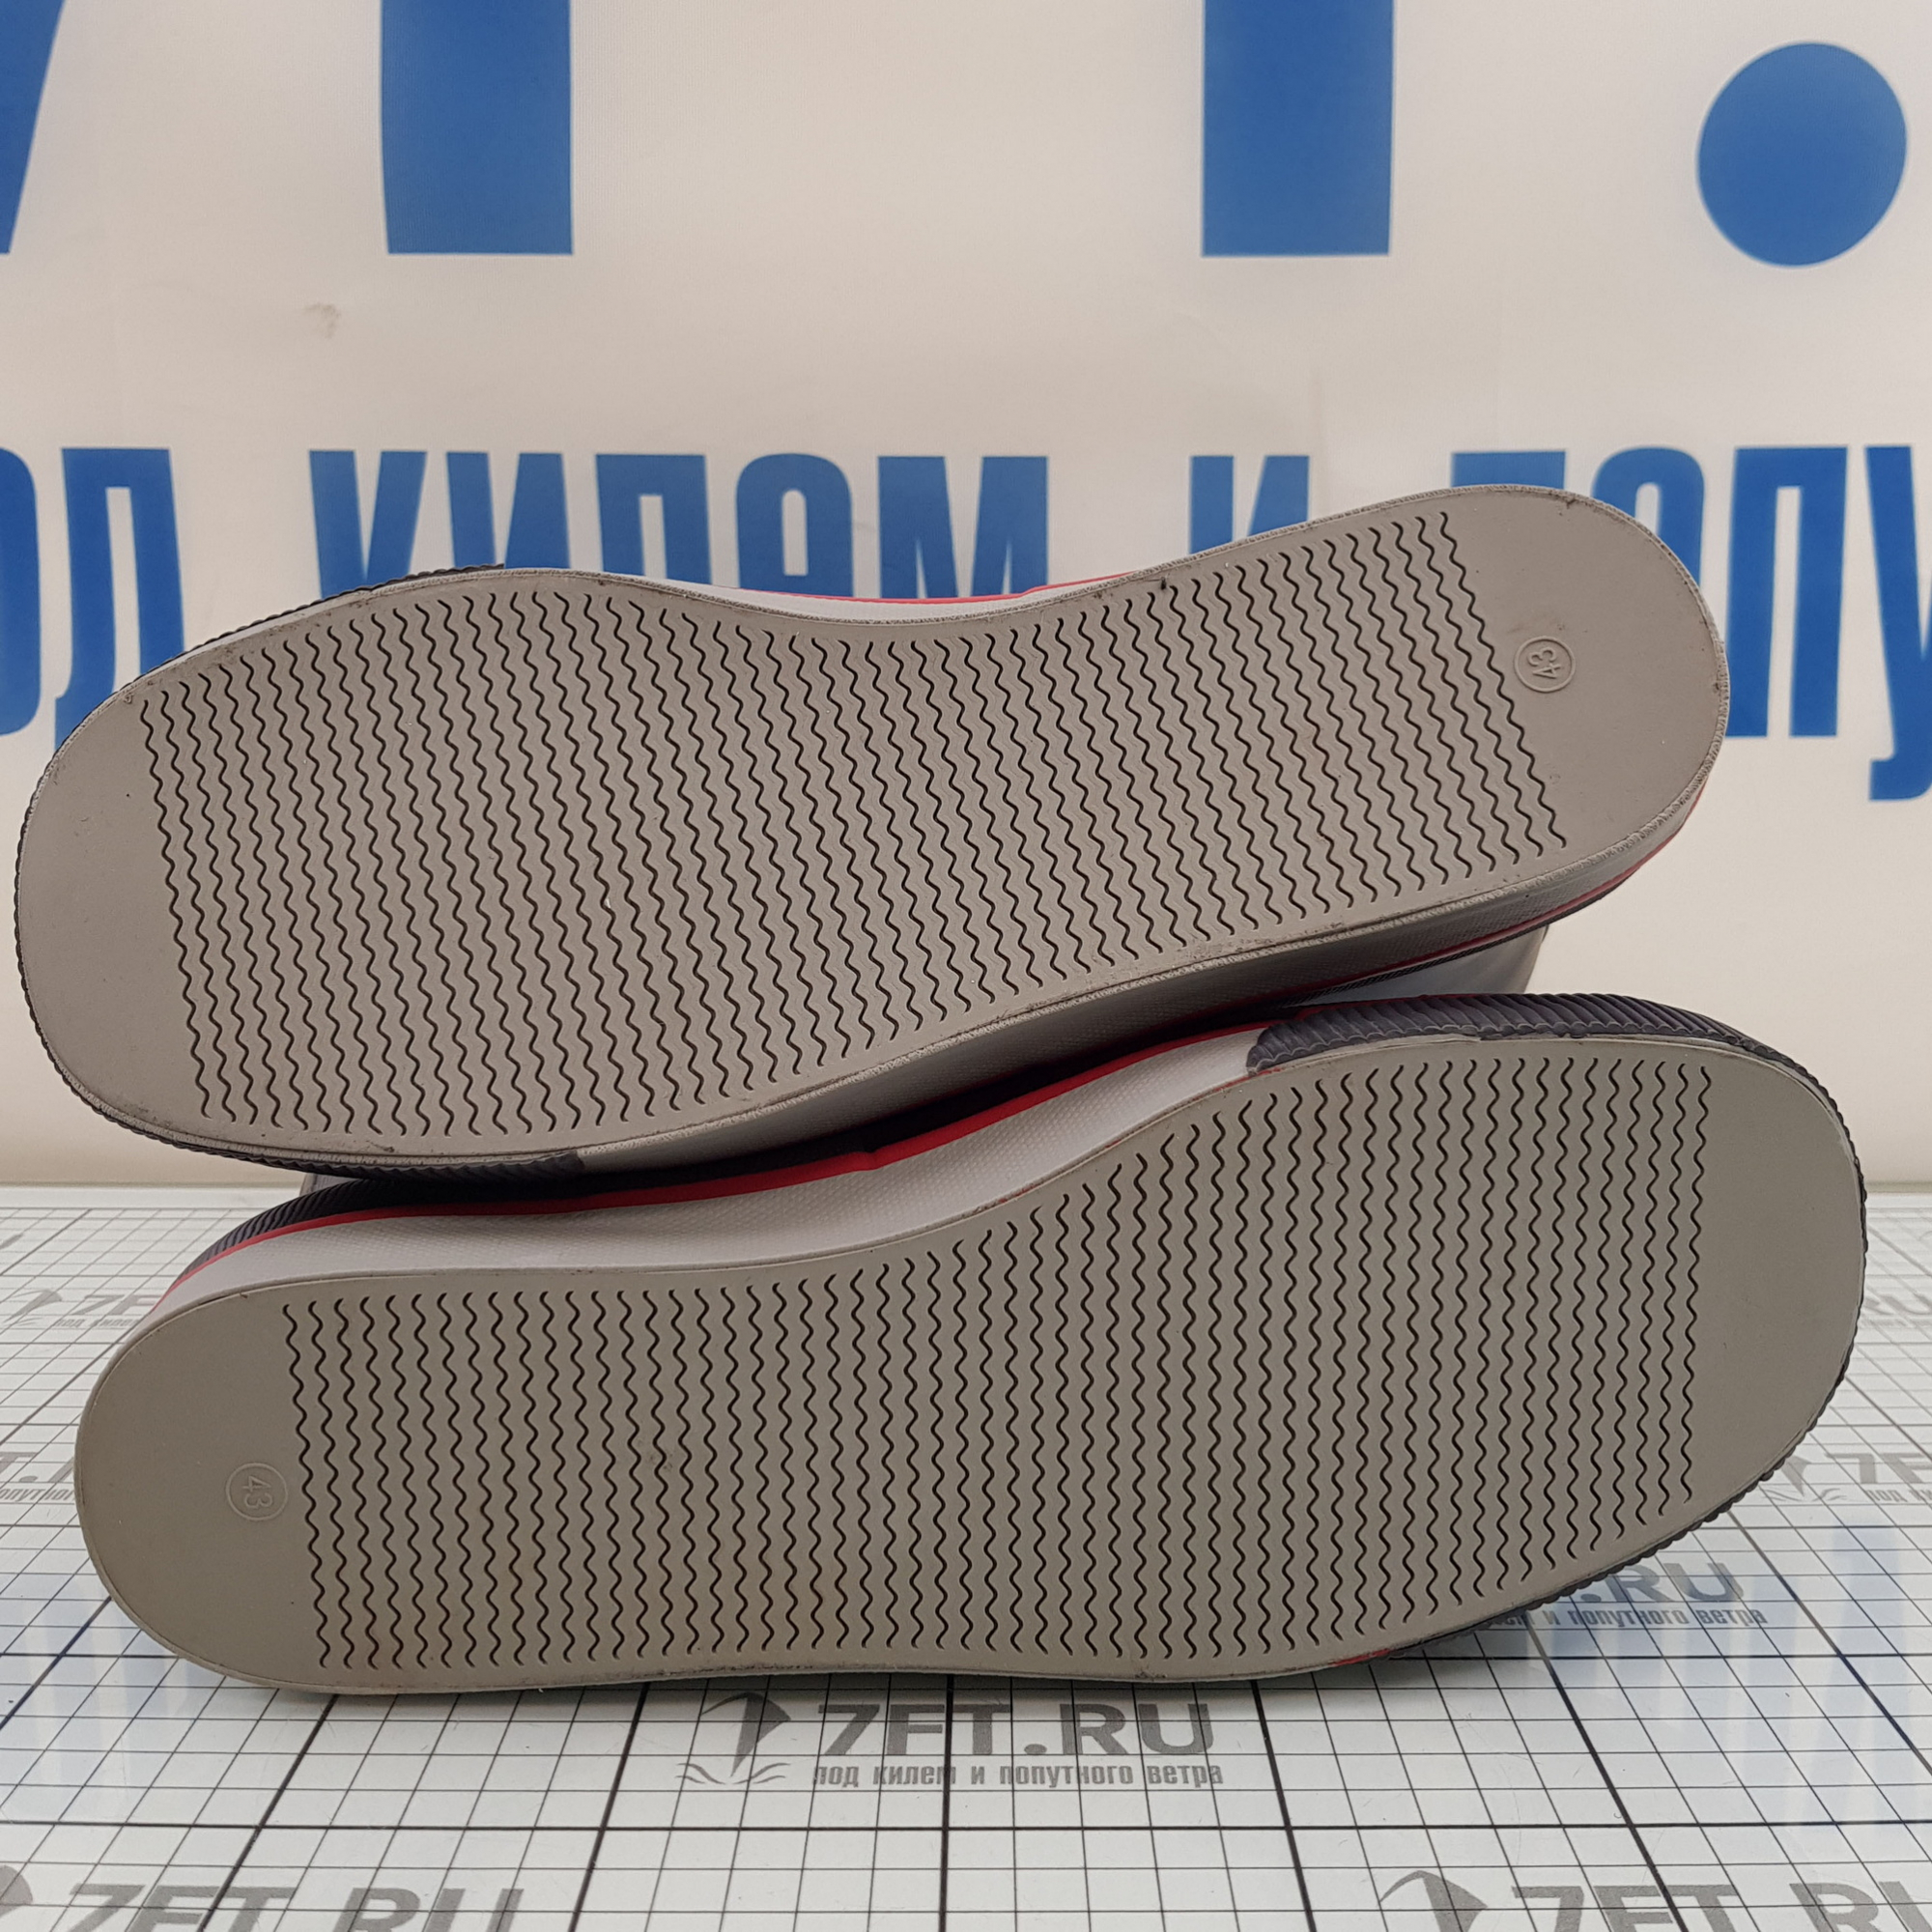 Купить Резиновые сапоги Marine Quality 30.3920-43 серые 43 размер 7ft.ru в интернет магазине Семь Футов